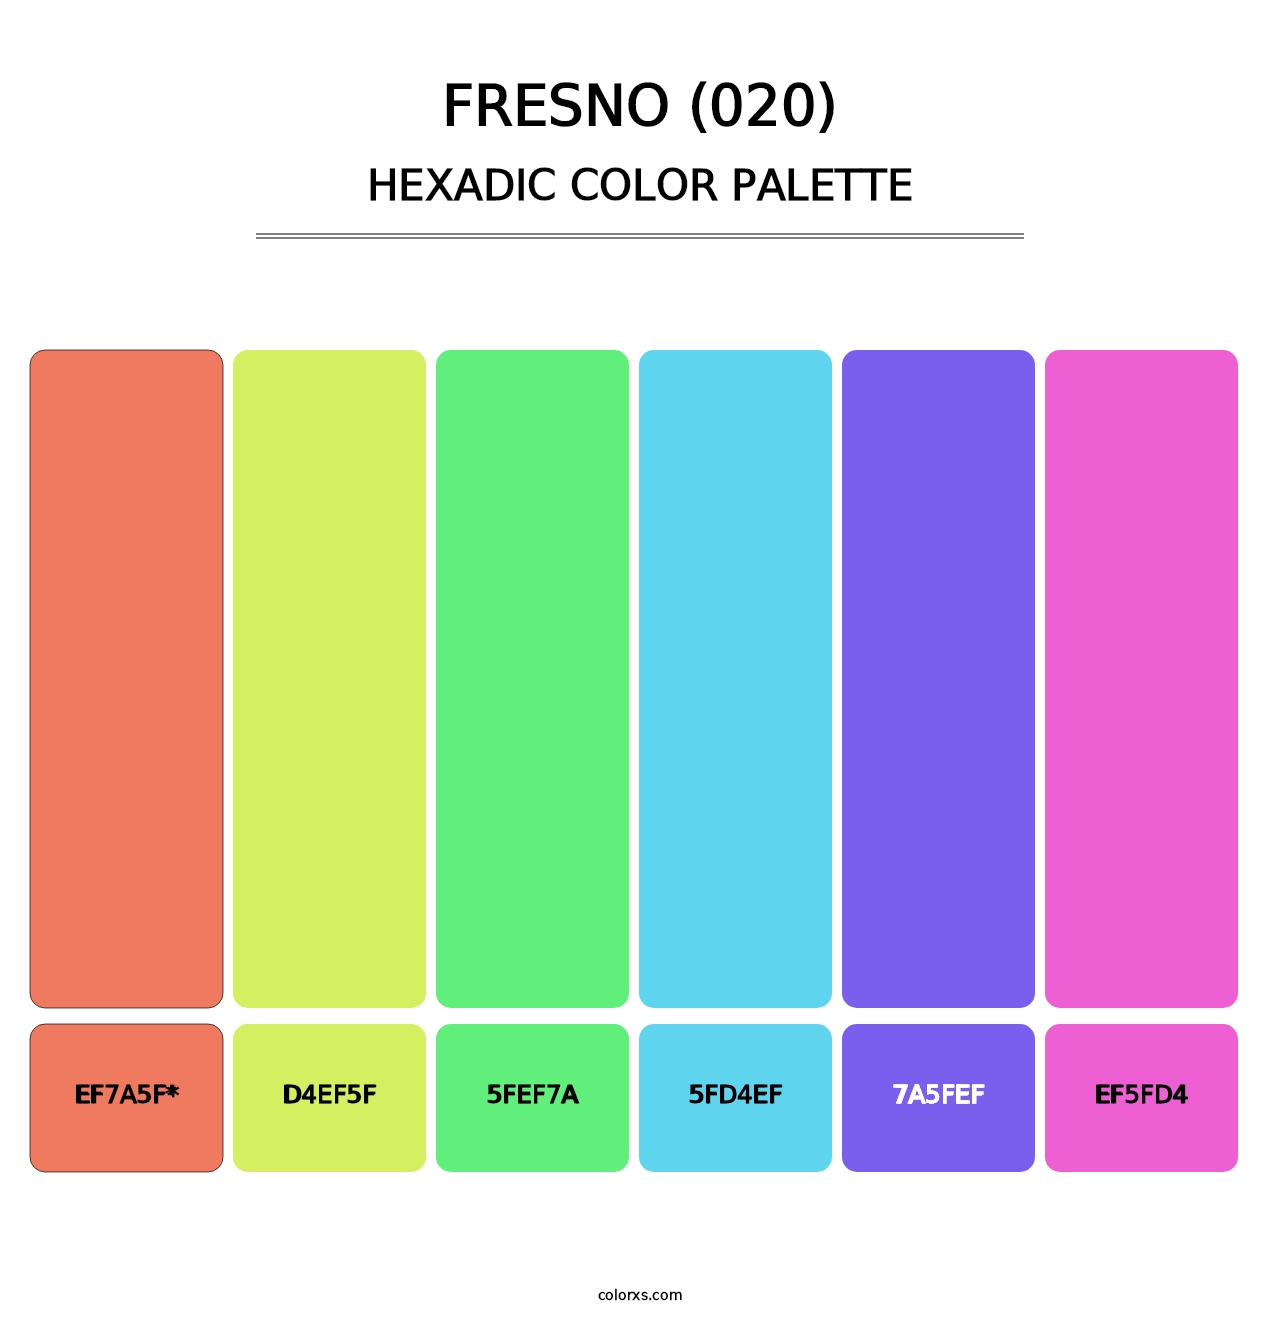 Fresno (020) - Hexadic Color Palette